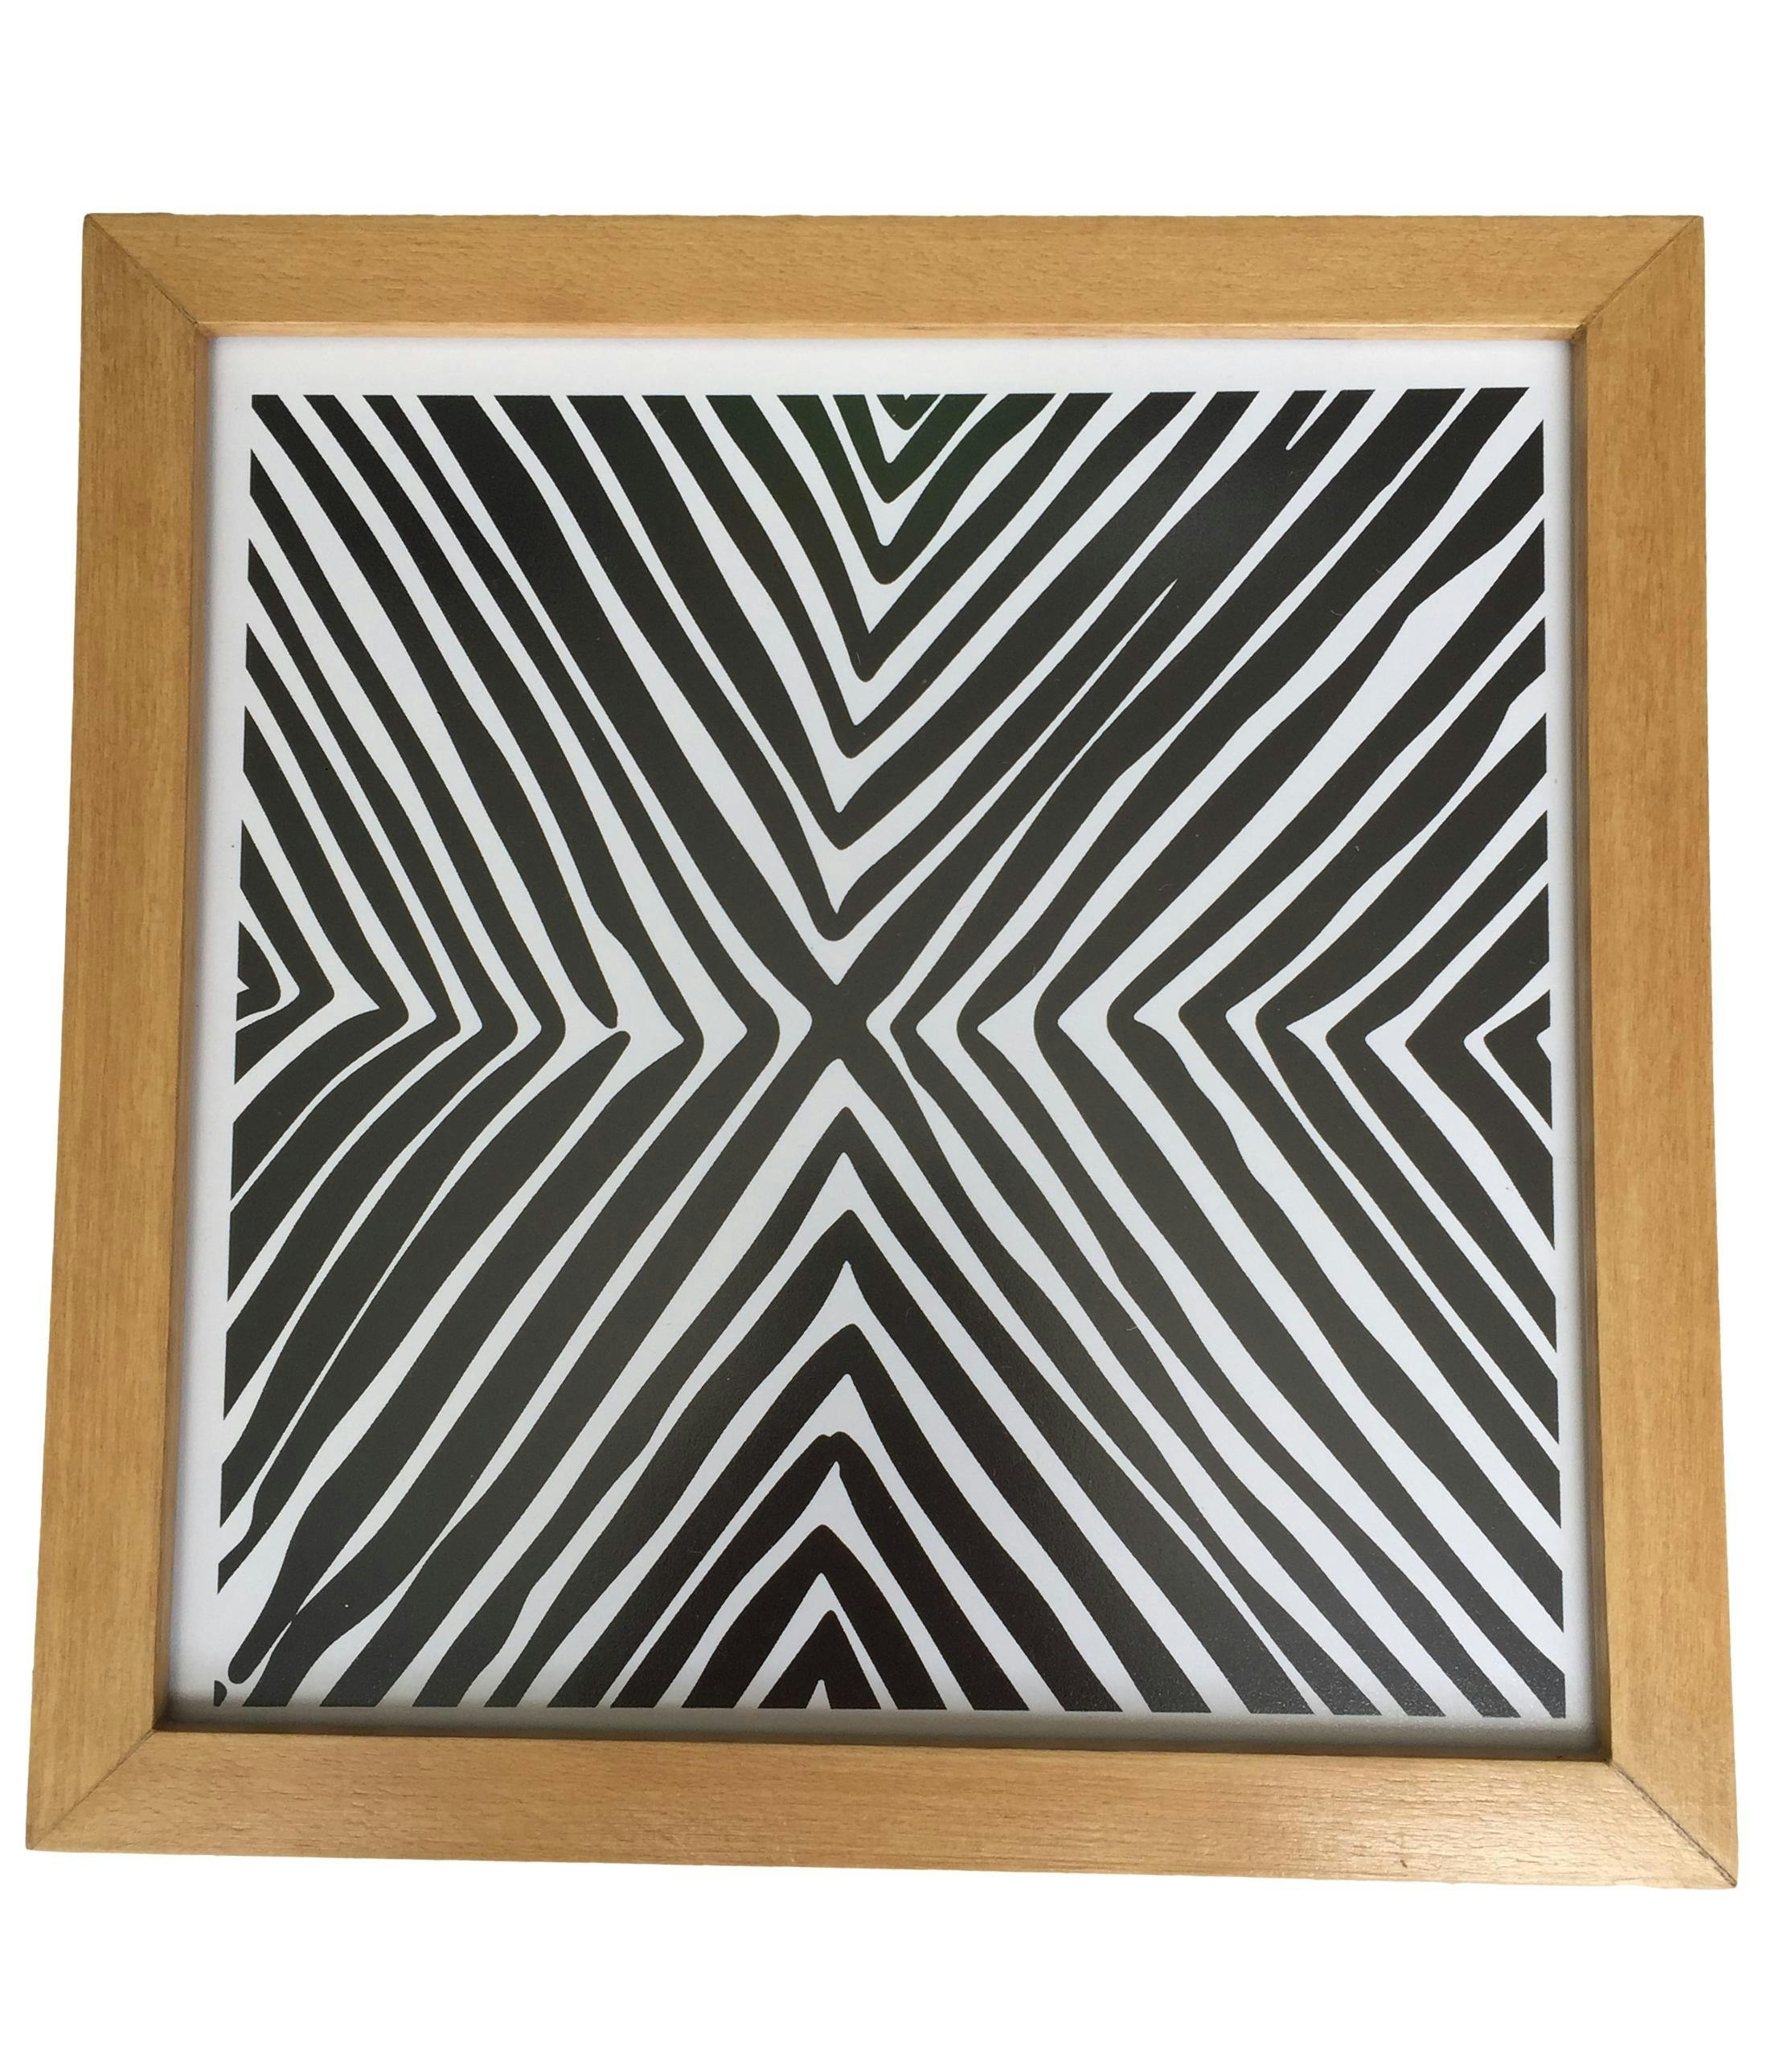 Cuadro blanco y negro en X, marco madera y mica protectora. Medidas 22x22cm